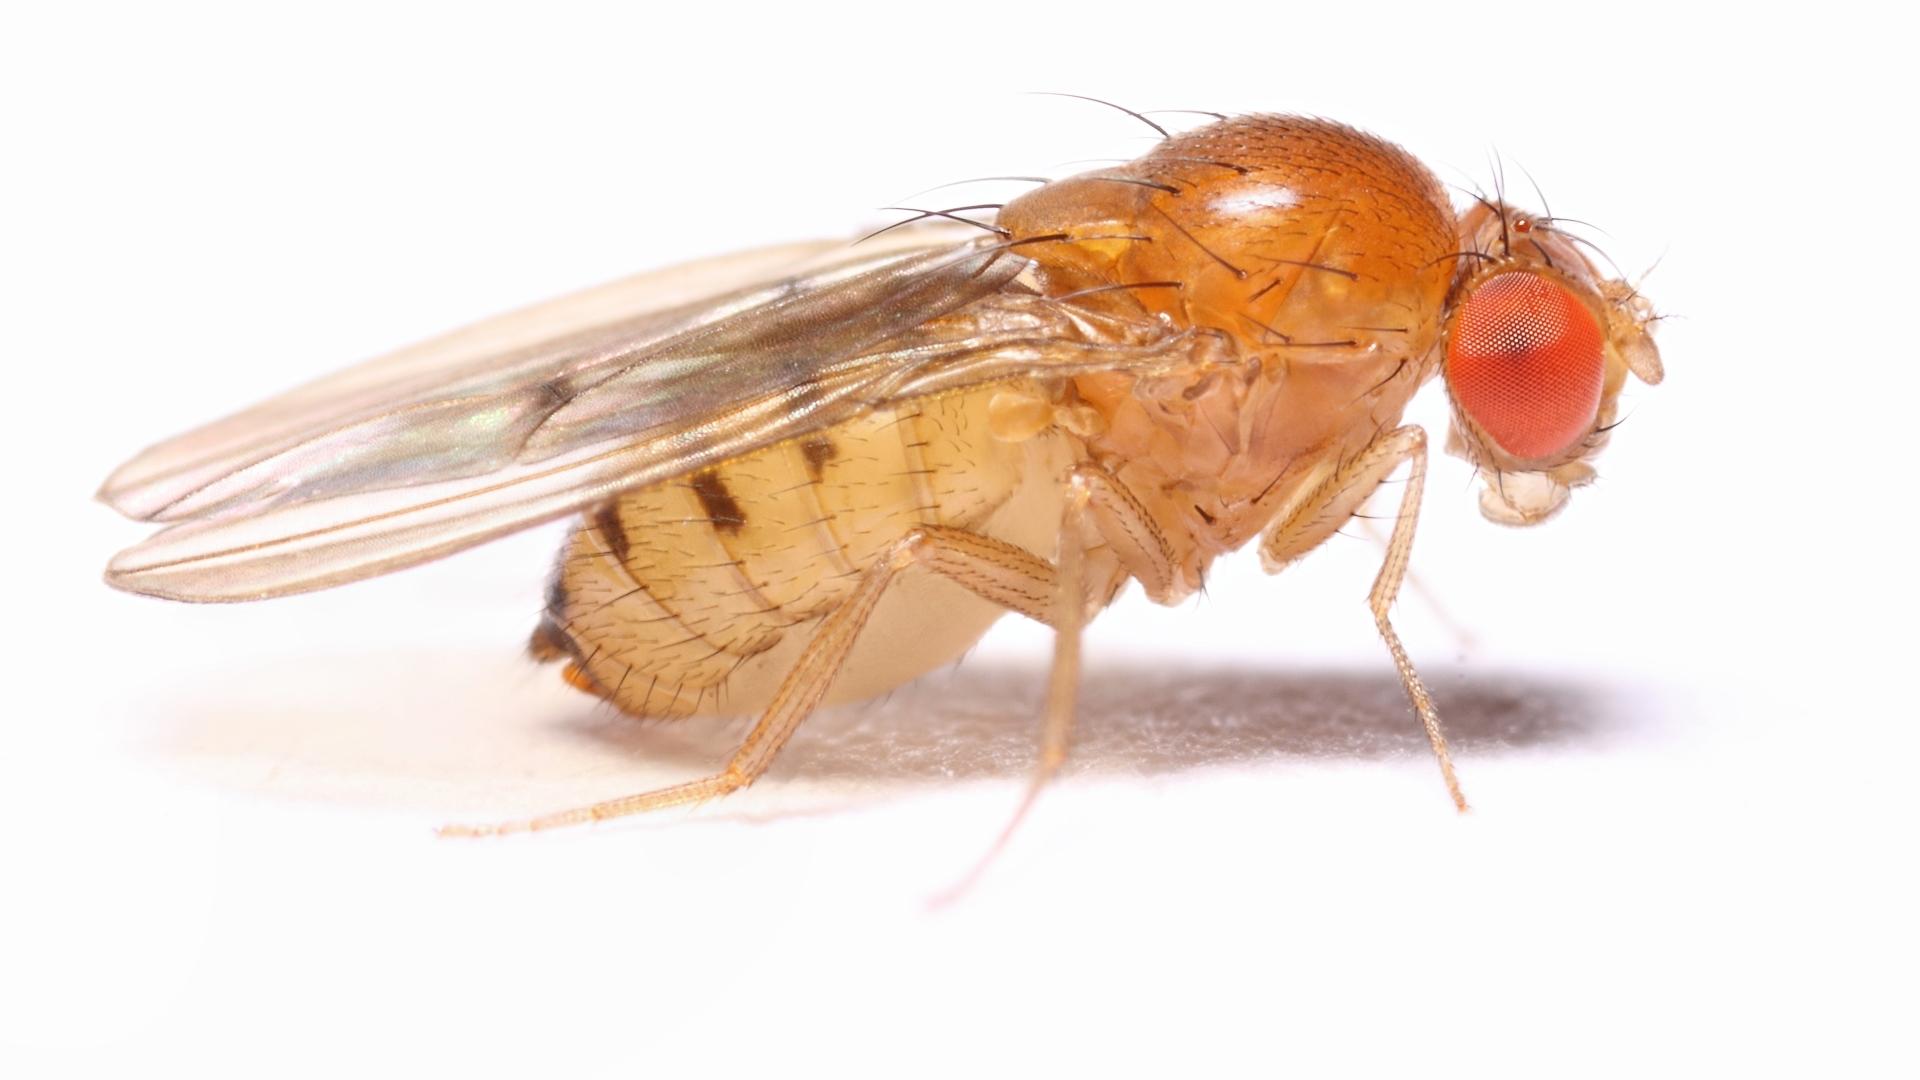 Под действием серотонина мухи замирают, когда пугаются. Почти как люди